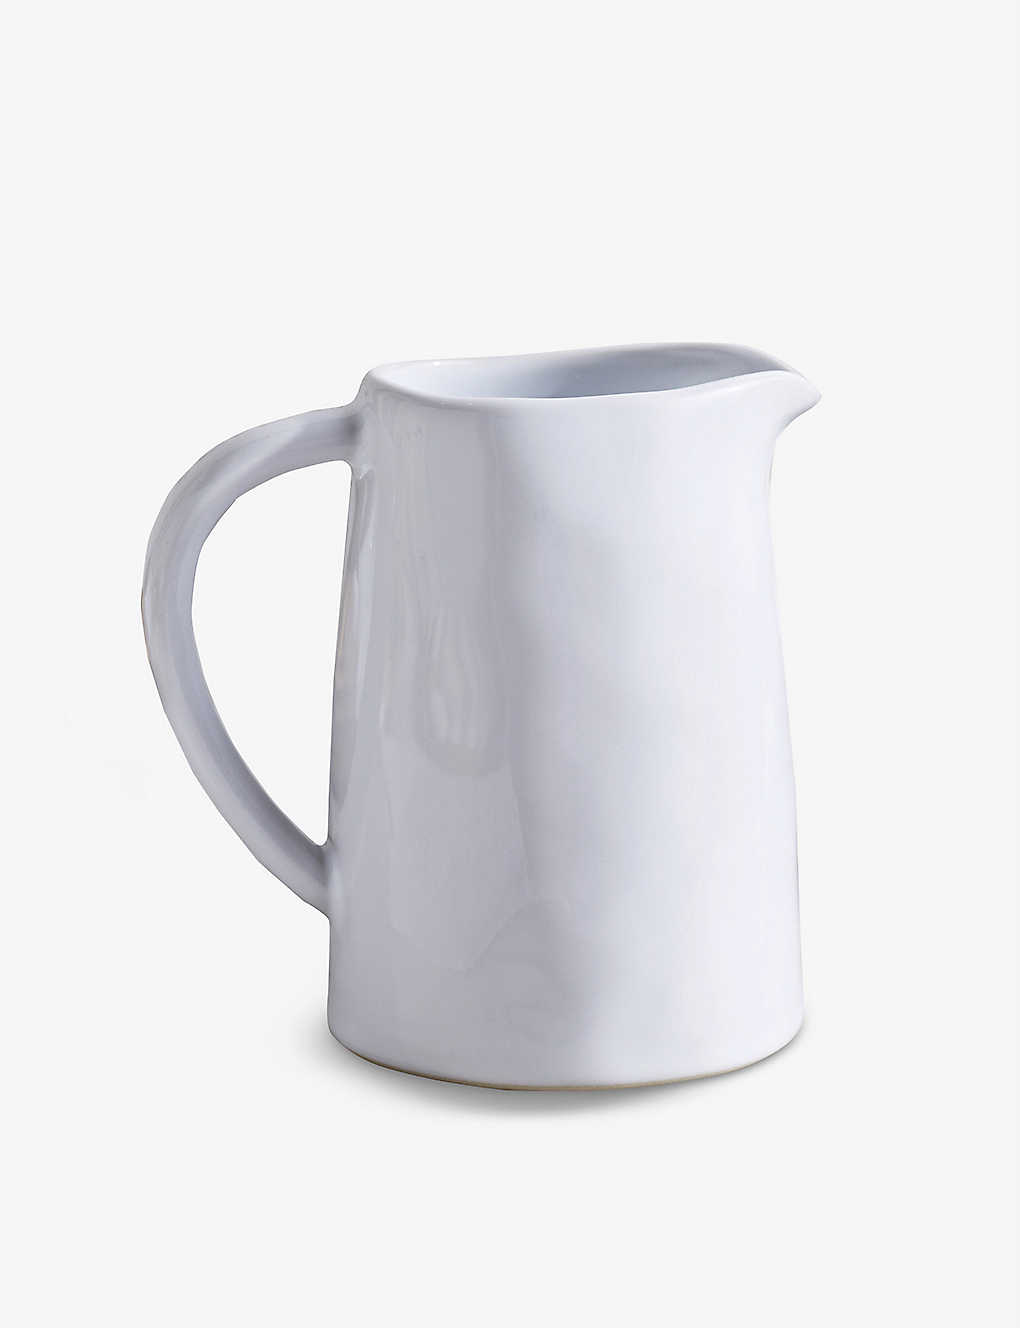 THE WHITE COMPANY ポルトベッロ ストーンウェア ジャグ 14cm Portobello stoneware jug 14cm #WHITE